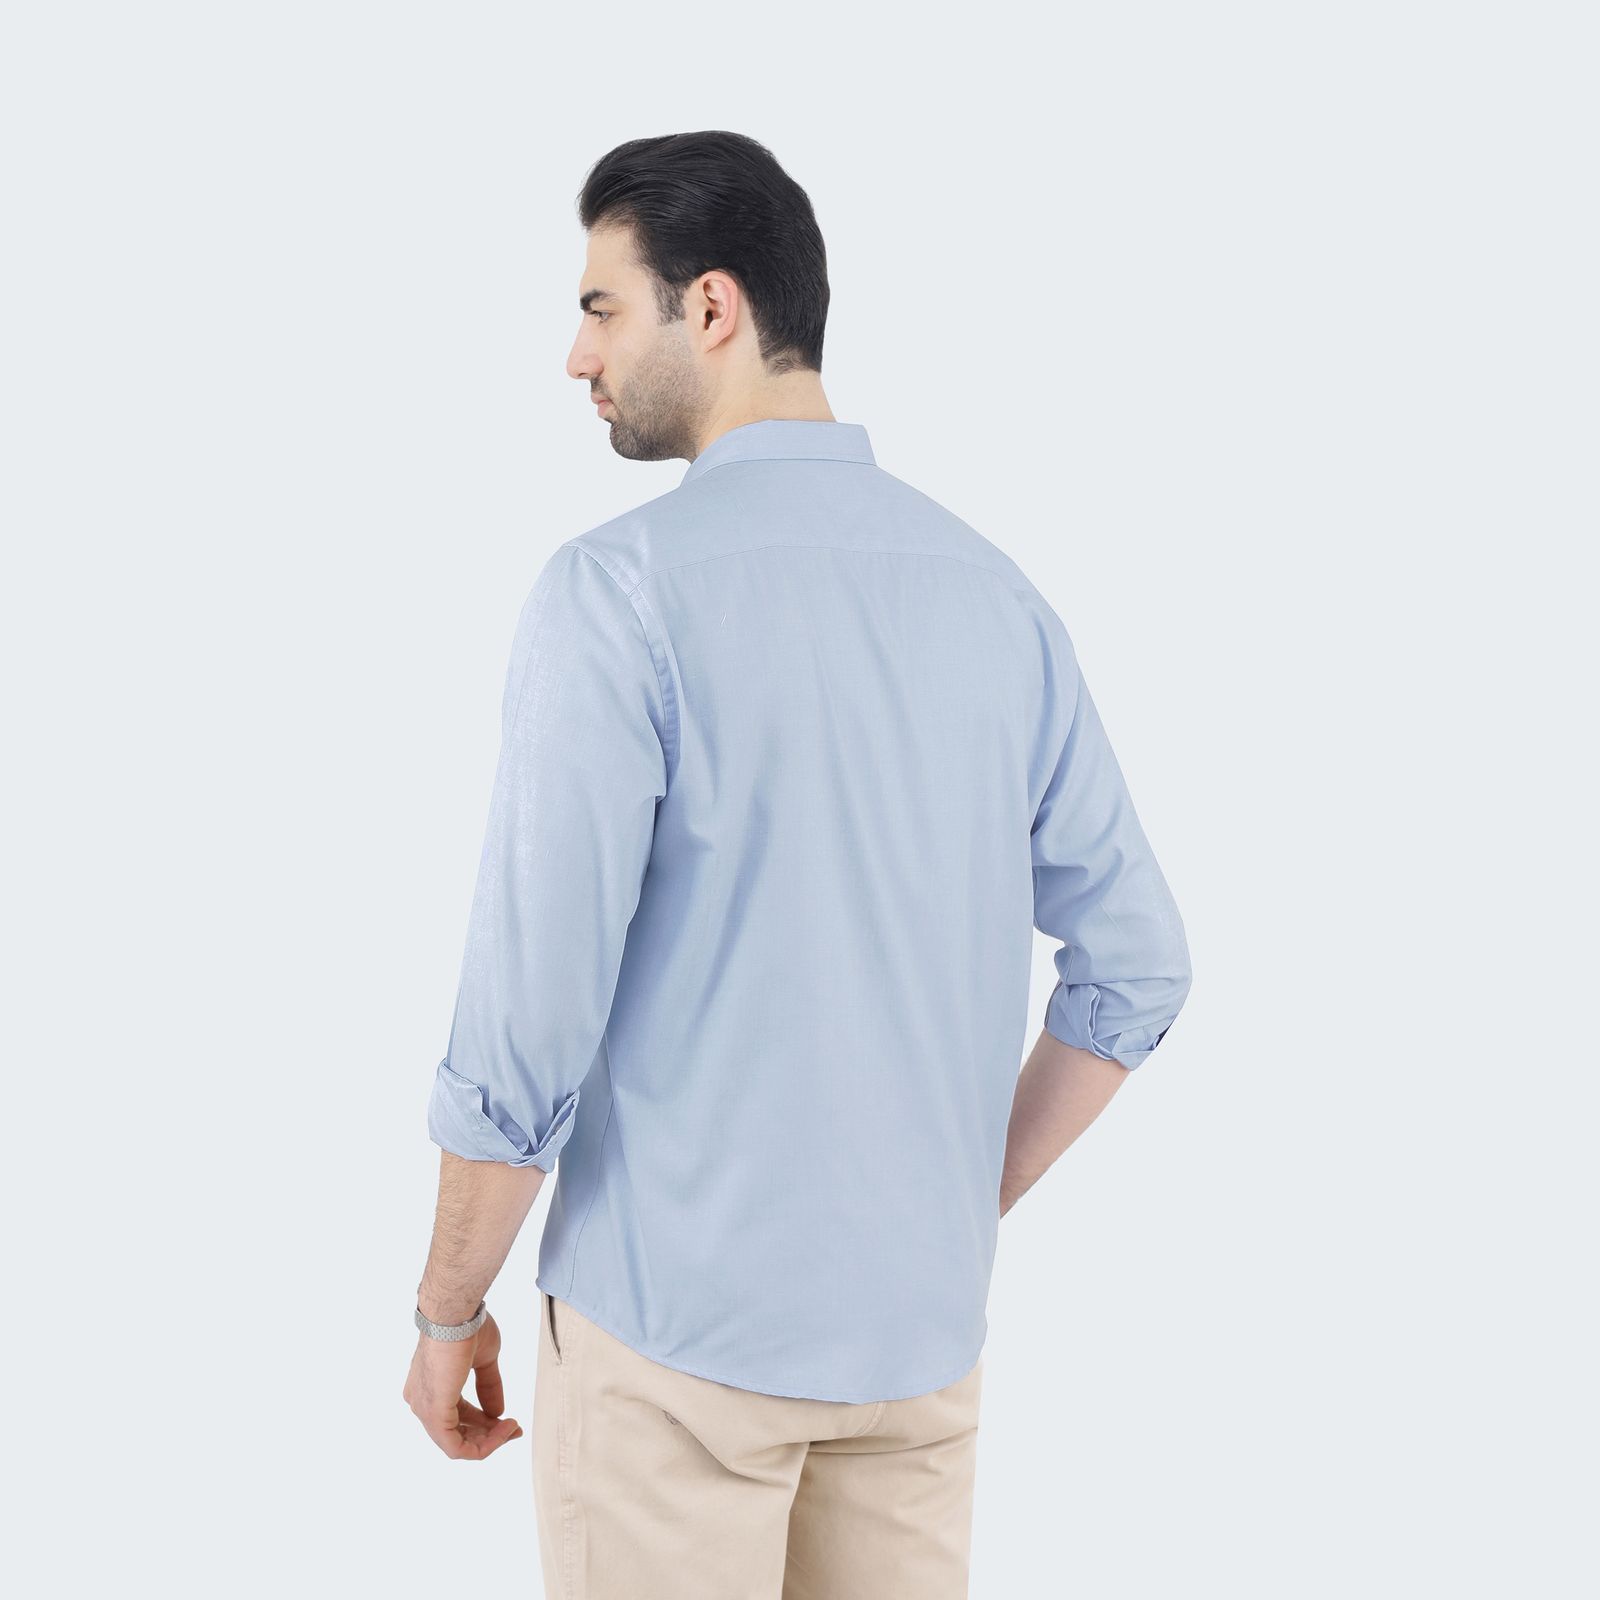 پیراهن آستین بلند مردانه پاتن جامه مدل تترون 102821020289306 رنگ آبی -  - 3